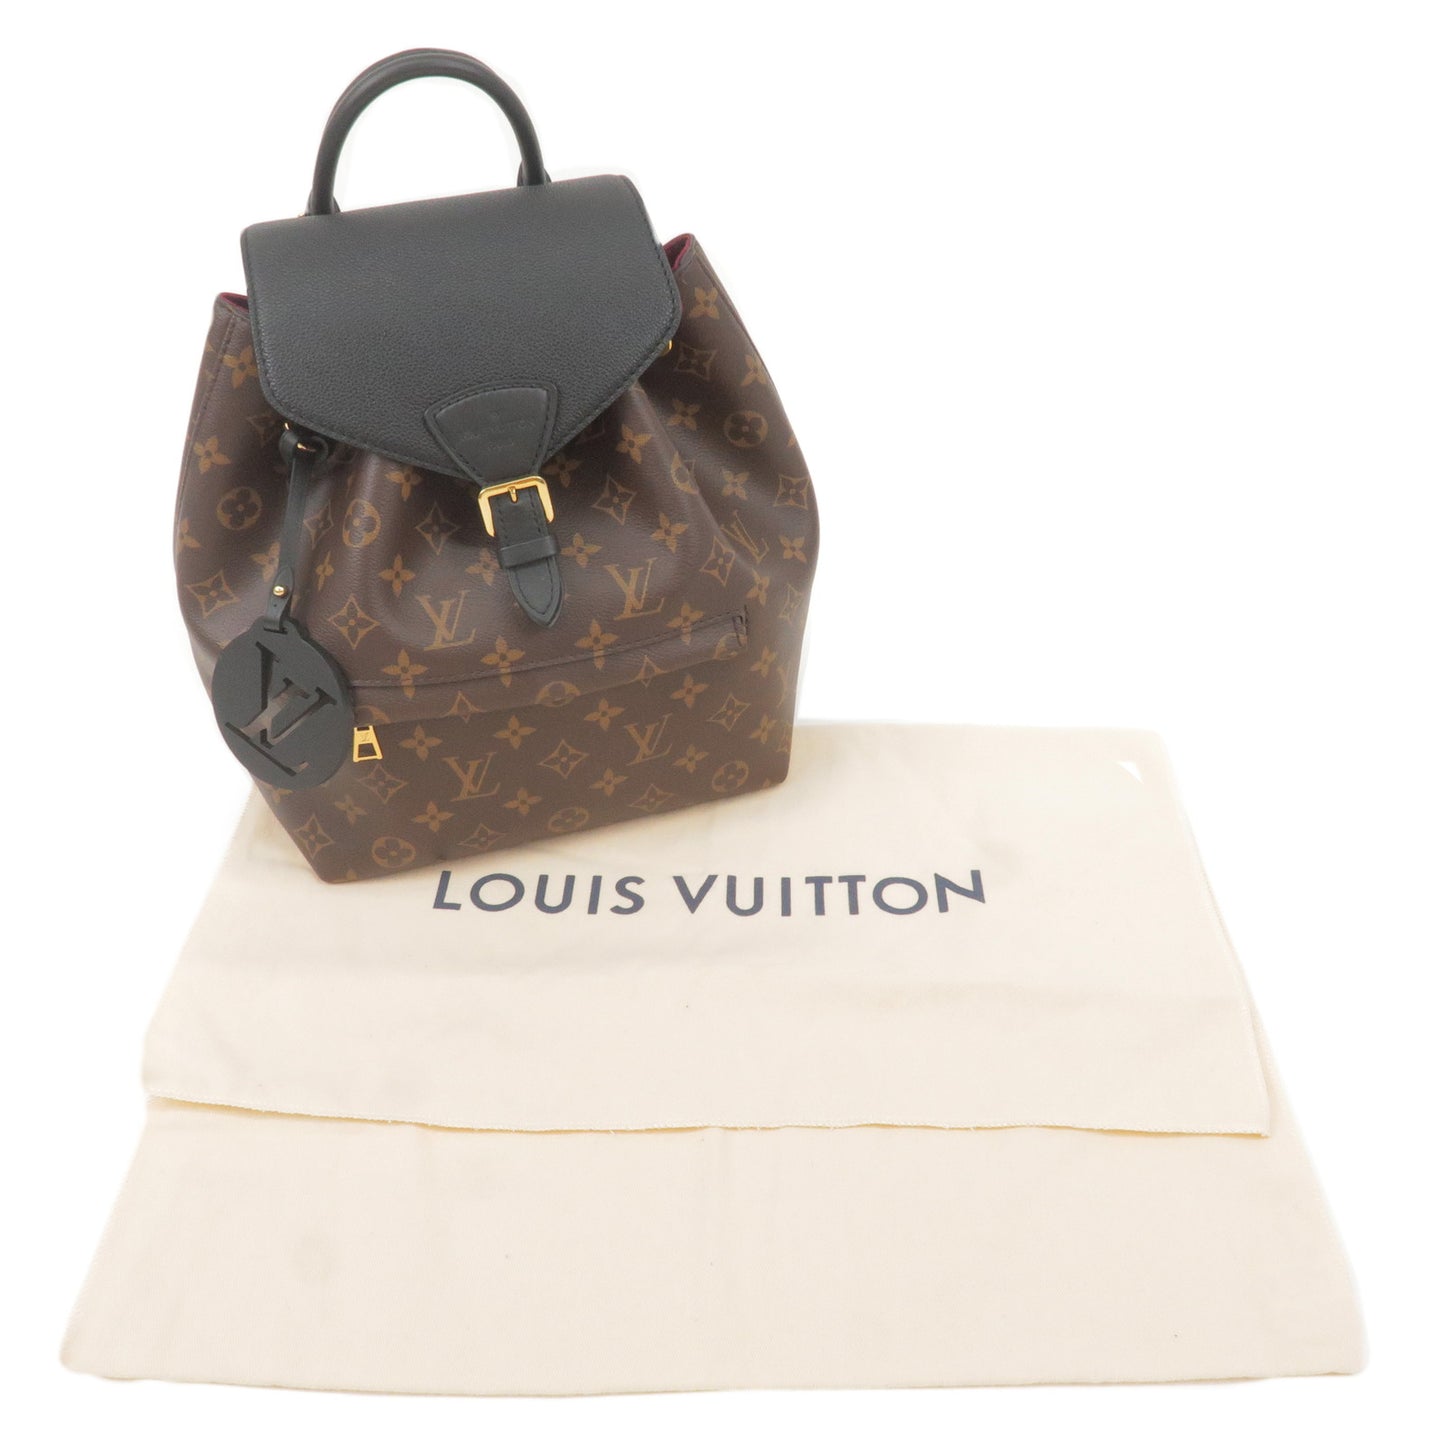 Shop Louis Vuitton Montsouris pm (M45515) by LESSISMORE☆